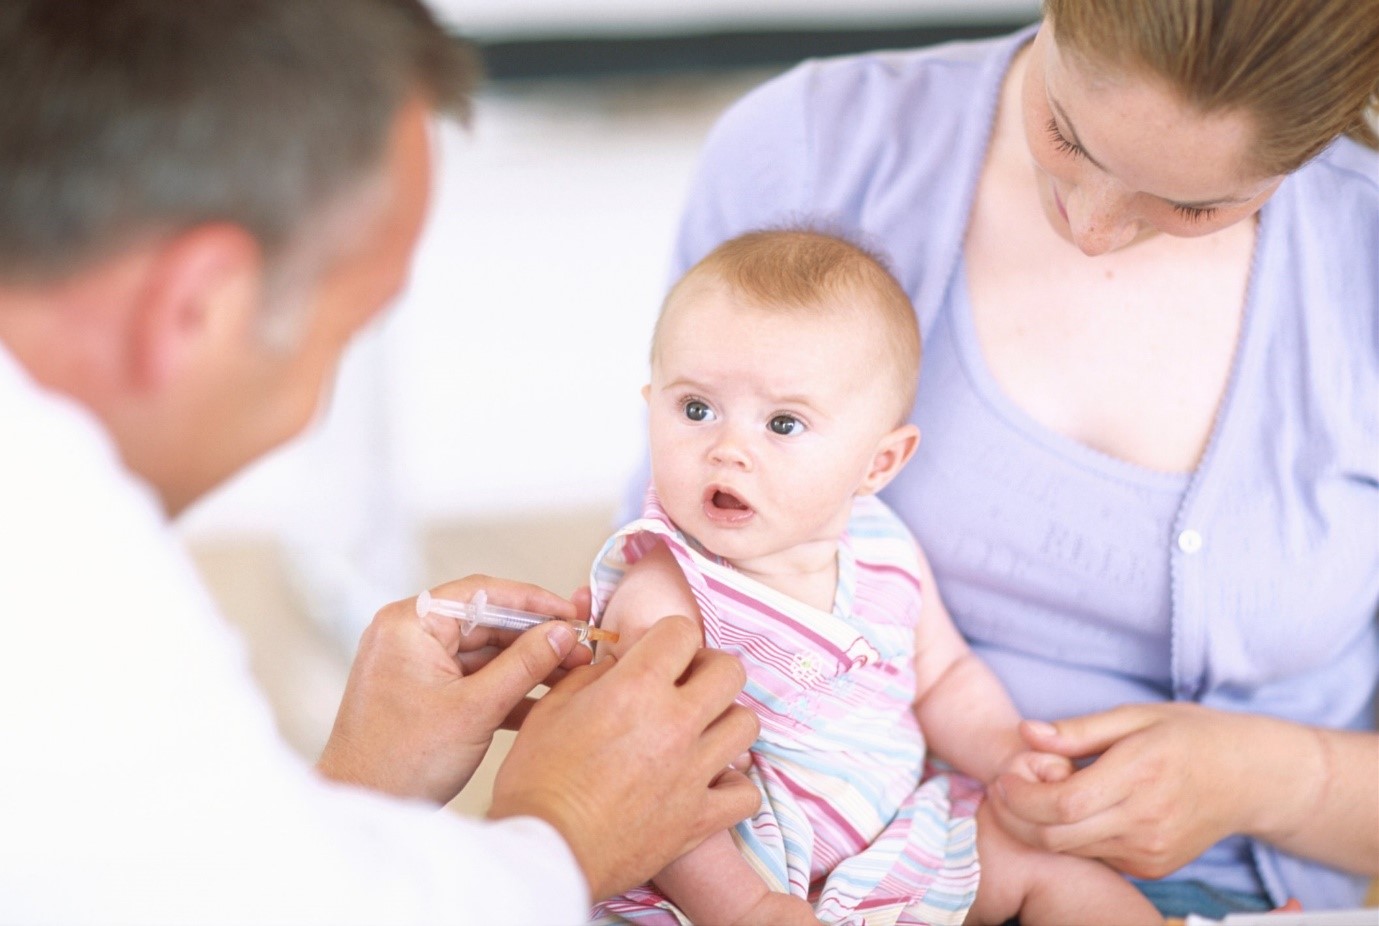 آیا عوارض واکسن در نوزادان صحت دارد؟